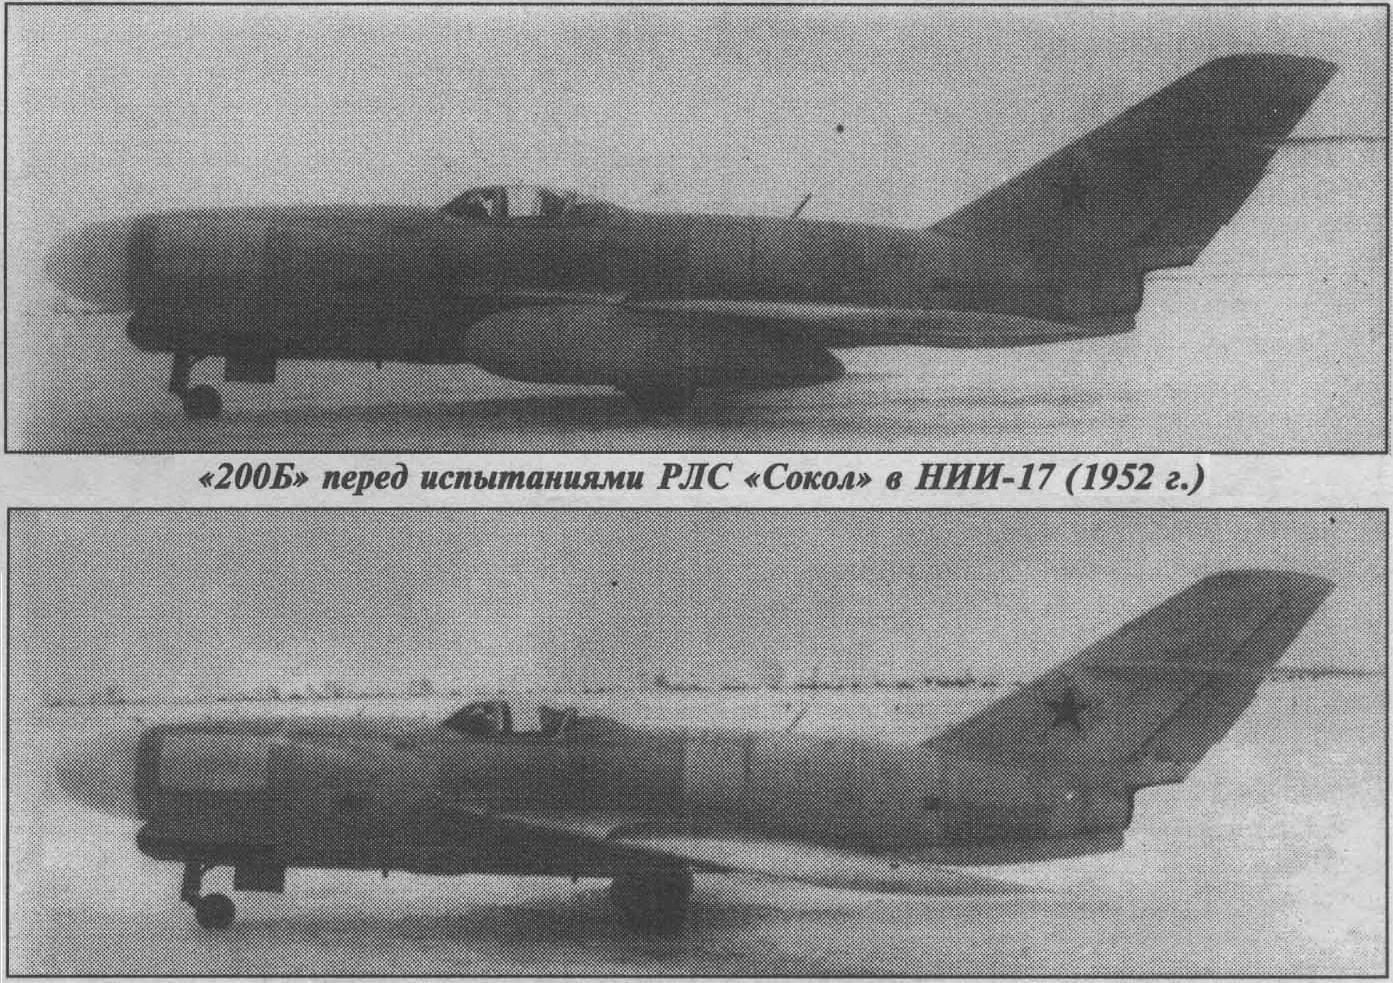 Опытный перехватчик Ла-200. СССР